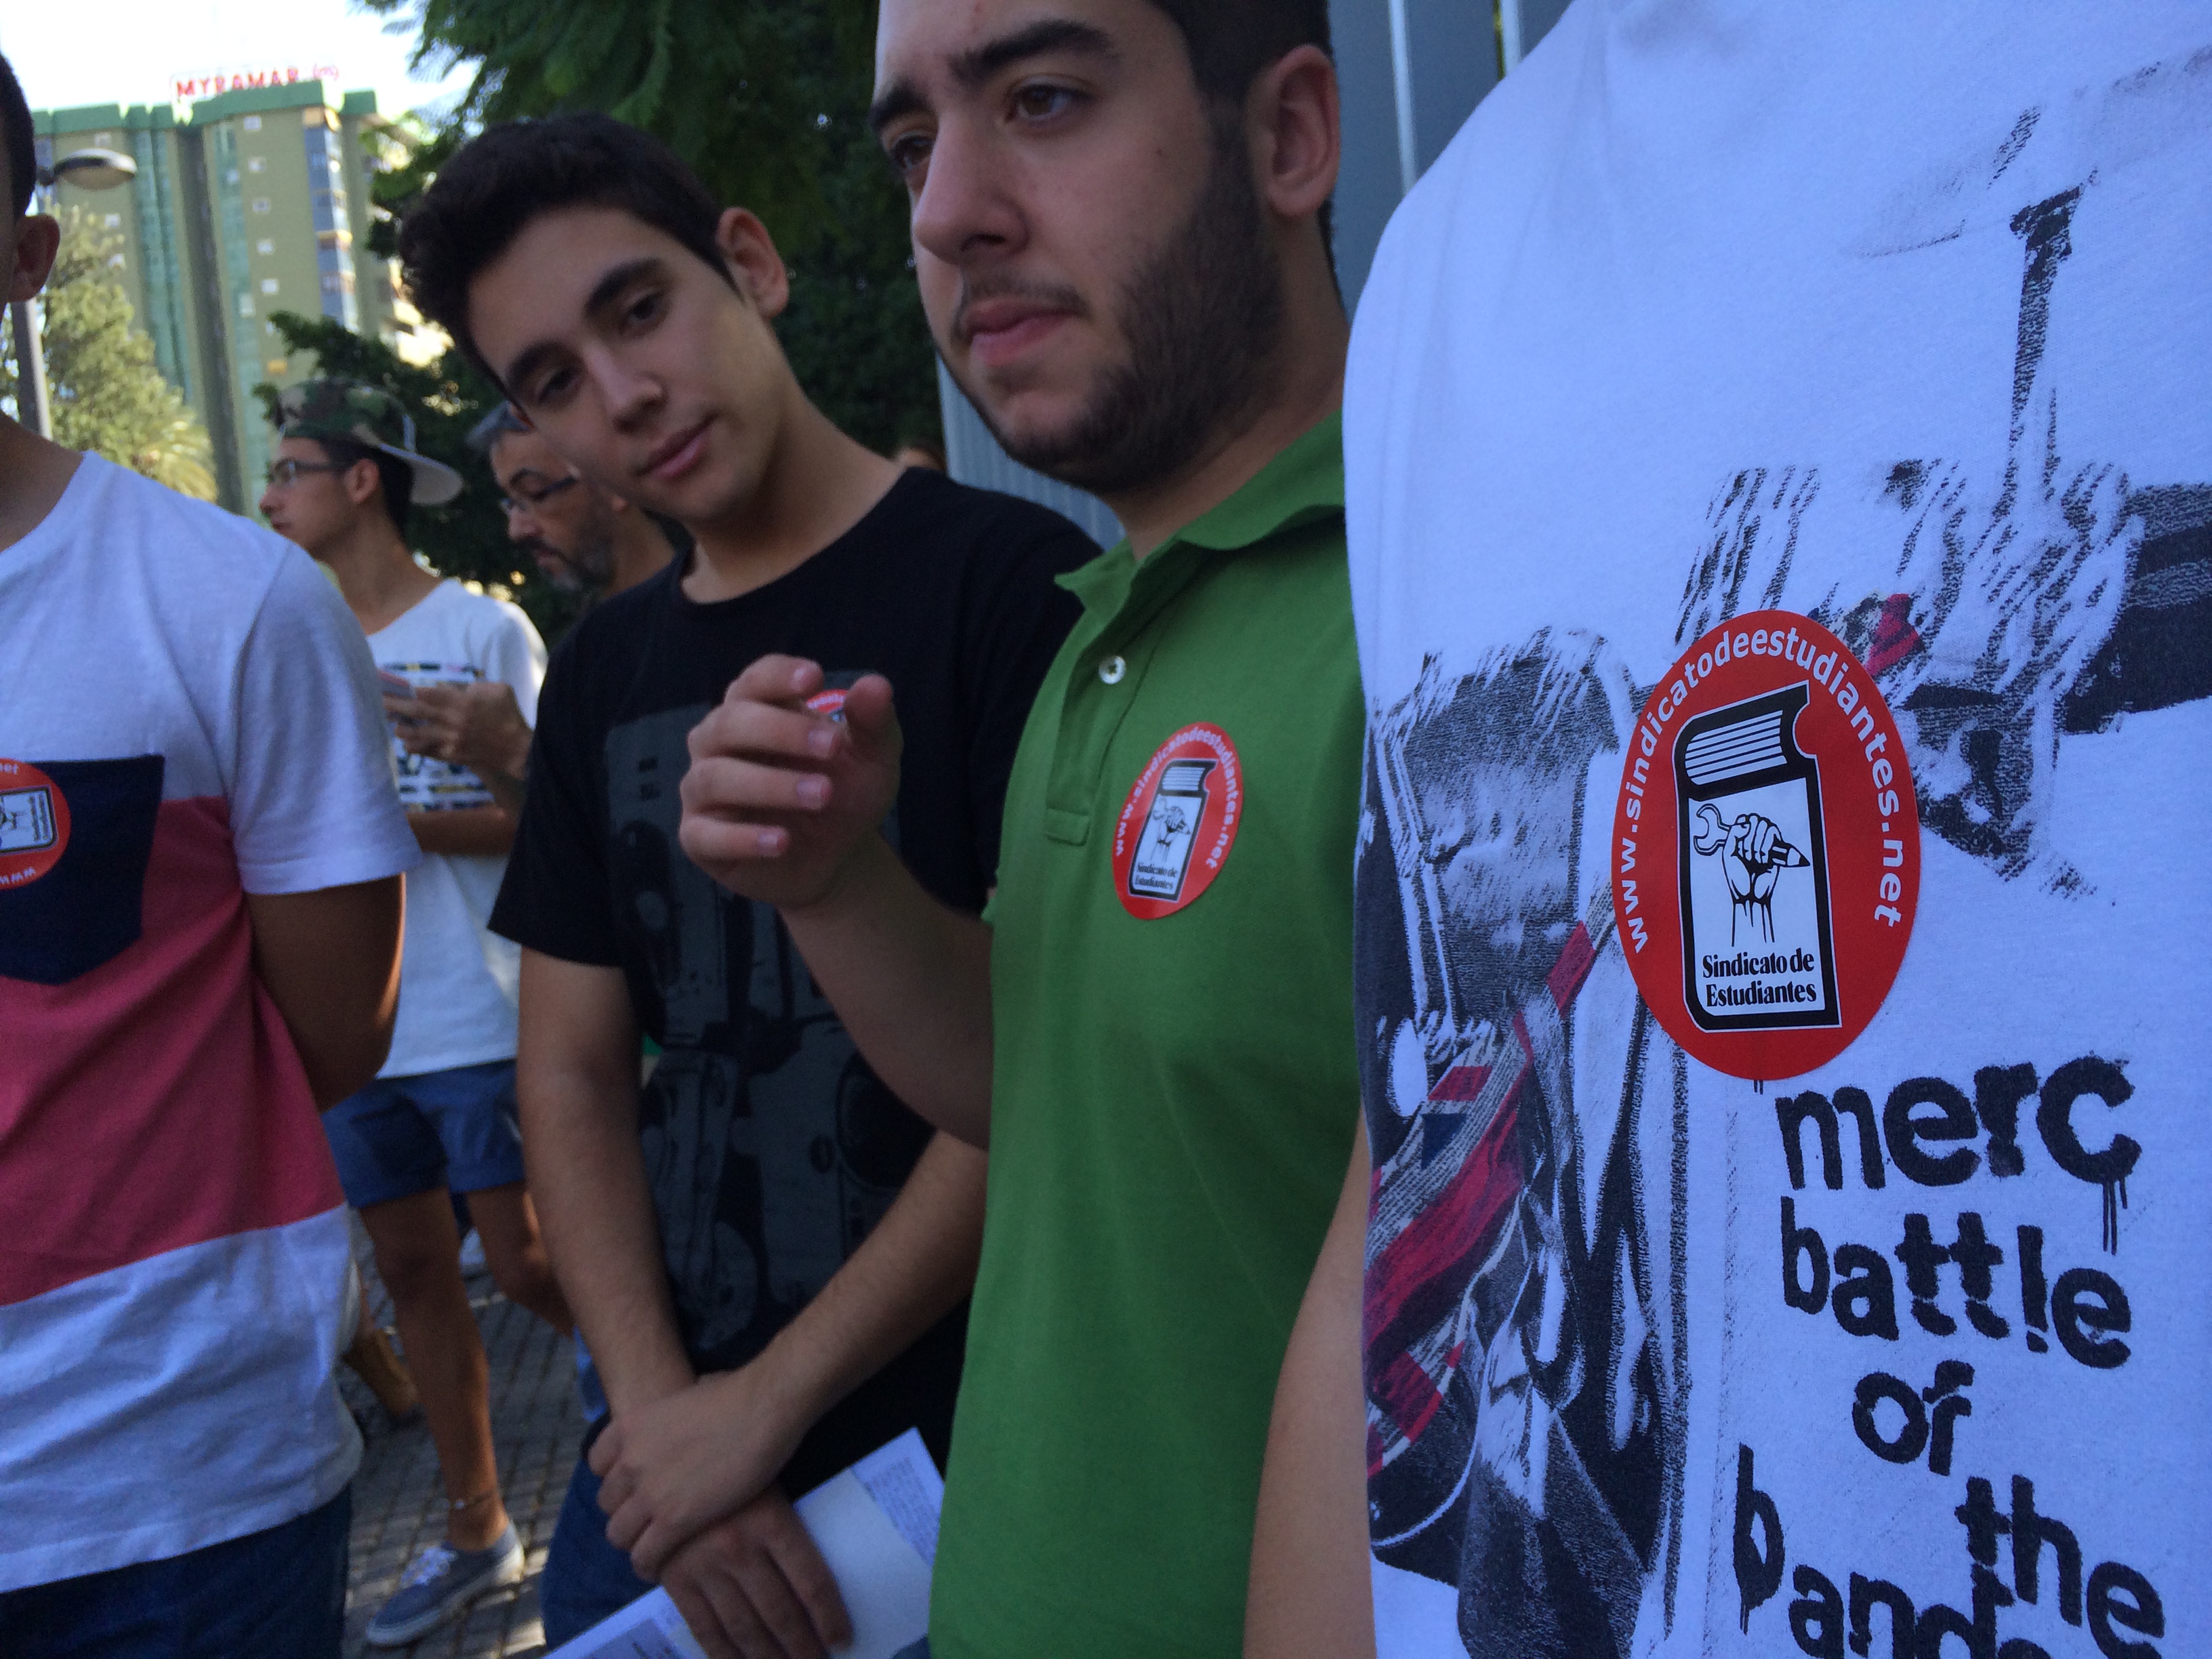  Las manifestaciones han sido también muy numerosas en Barcelona, Málaga y Valencia, según los organizadores.